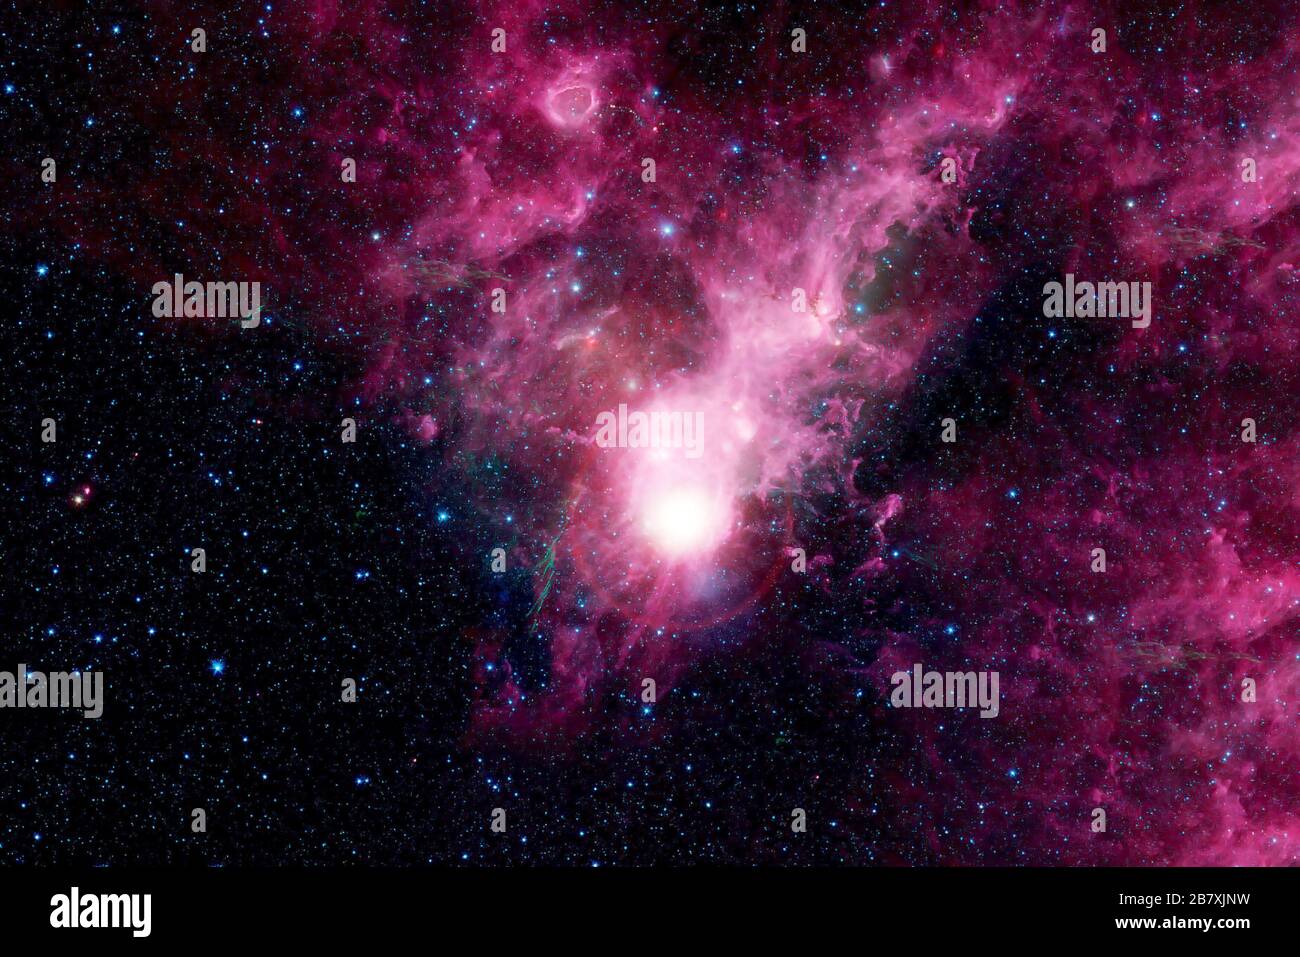 Schöner rosafarbener kosmischer Nebel im tiefen Raum. Elemente dieses Bildes wurden von der NASA eingerichtet. Stockfoto